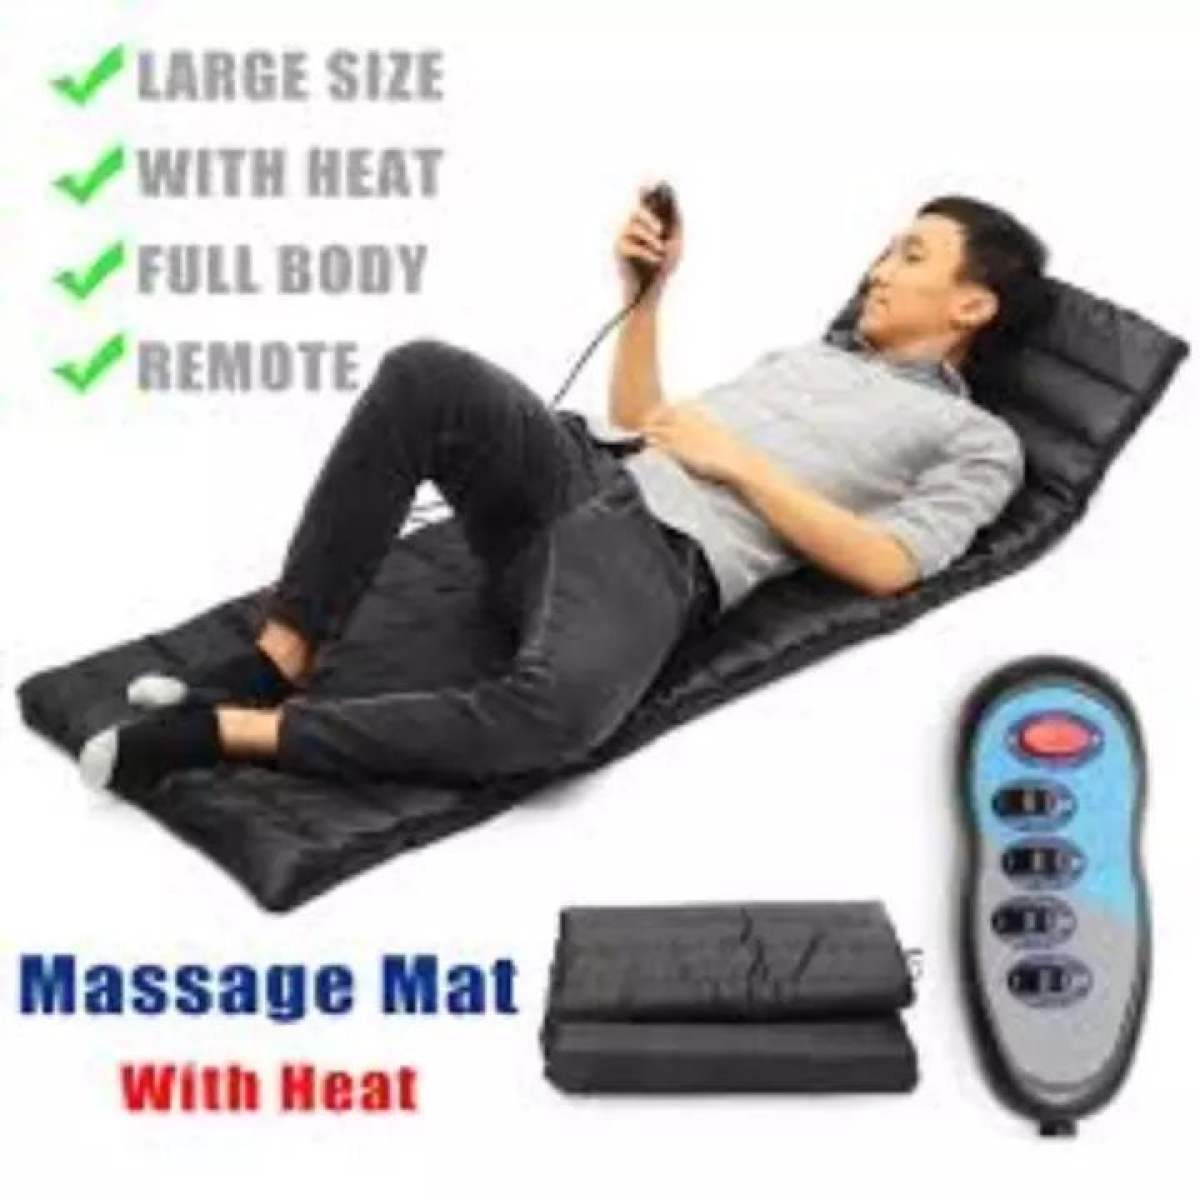 Full Body Massage - Heat Massage Bed Mattress Sofa Mat Cushion - 9 Motor massage High Quality Health Care Massage Body Massage Fully Mode With Remote Control Hi-Tech Technology - Massage,9 Motors Full Body Massage